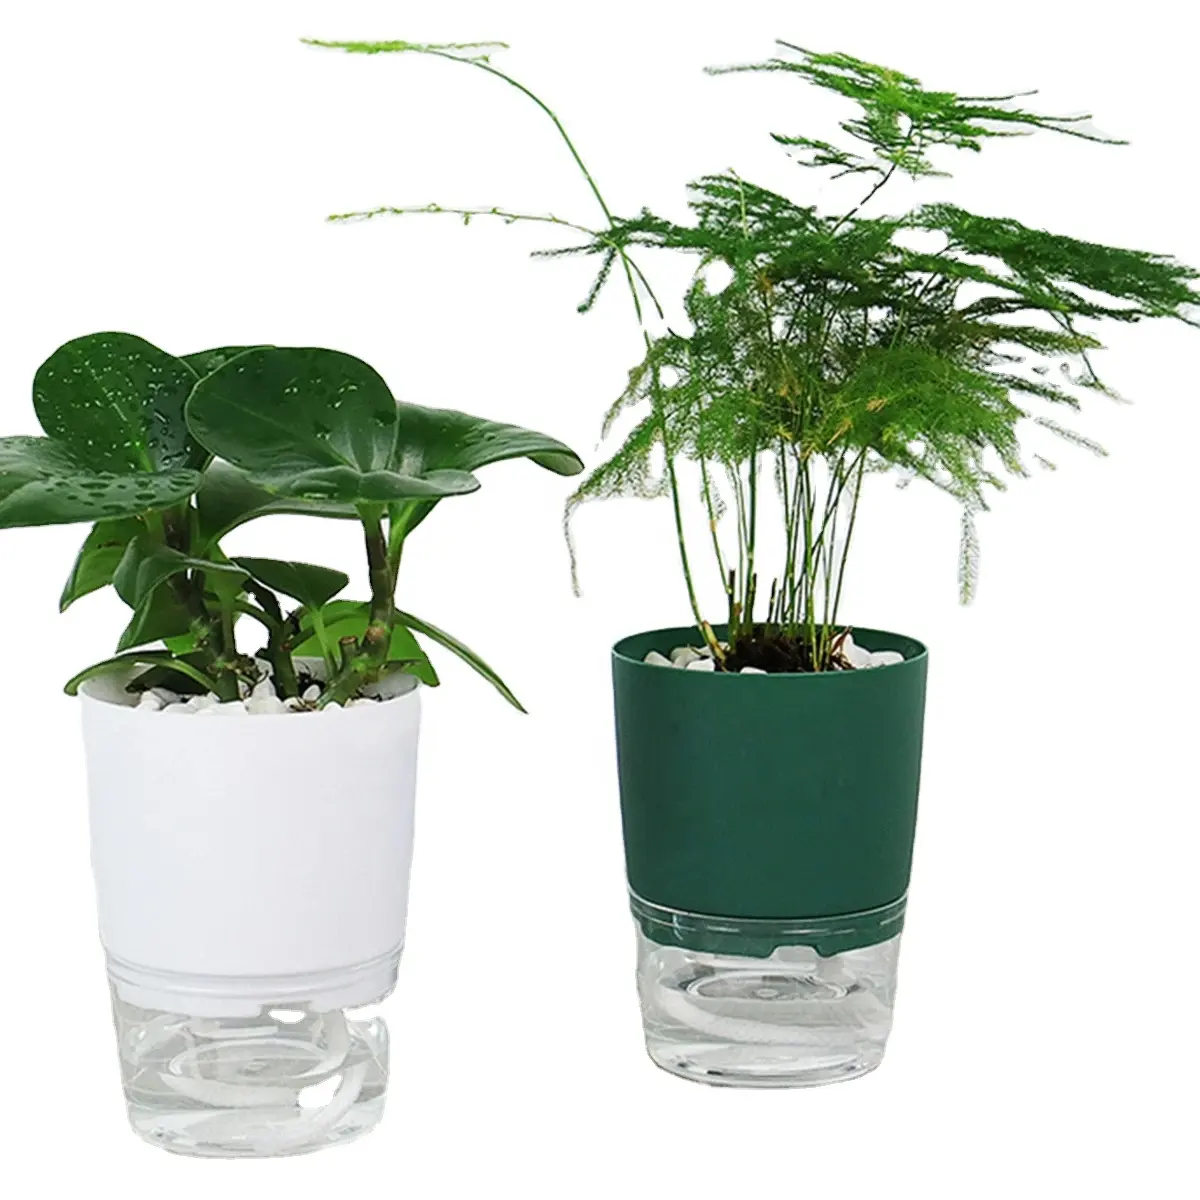 Pots de plantes à arrosage automatique Pot de fleur hydroponique paresseux absorbant l'eau plante succulente Pot de fleurs jardin Injection décorative moderne